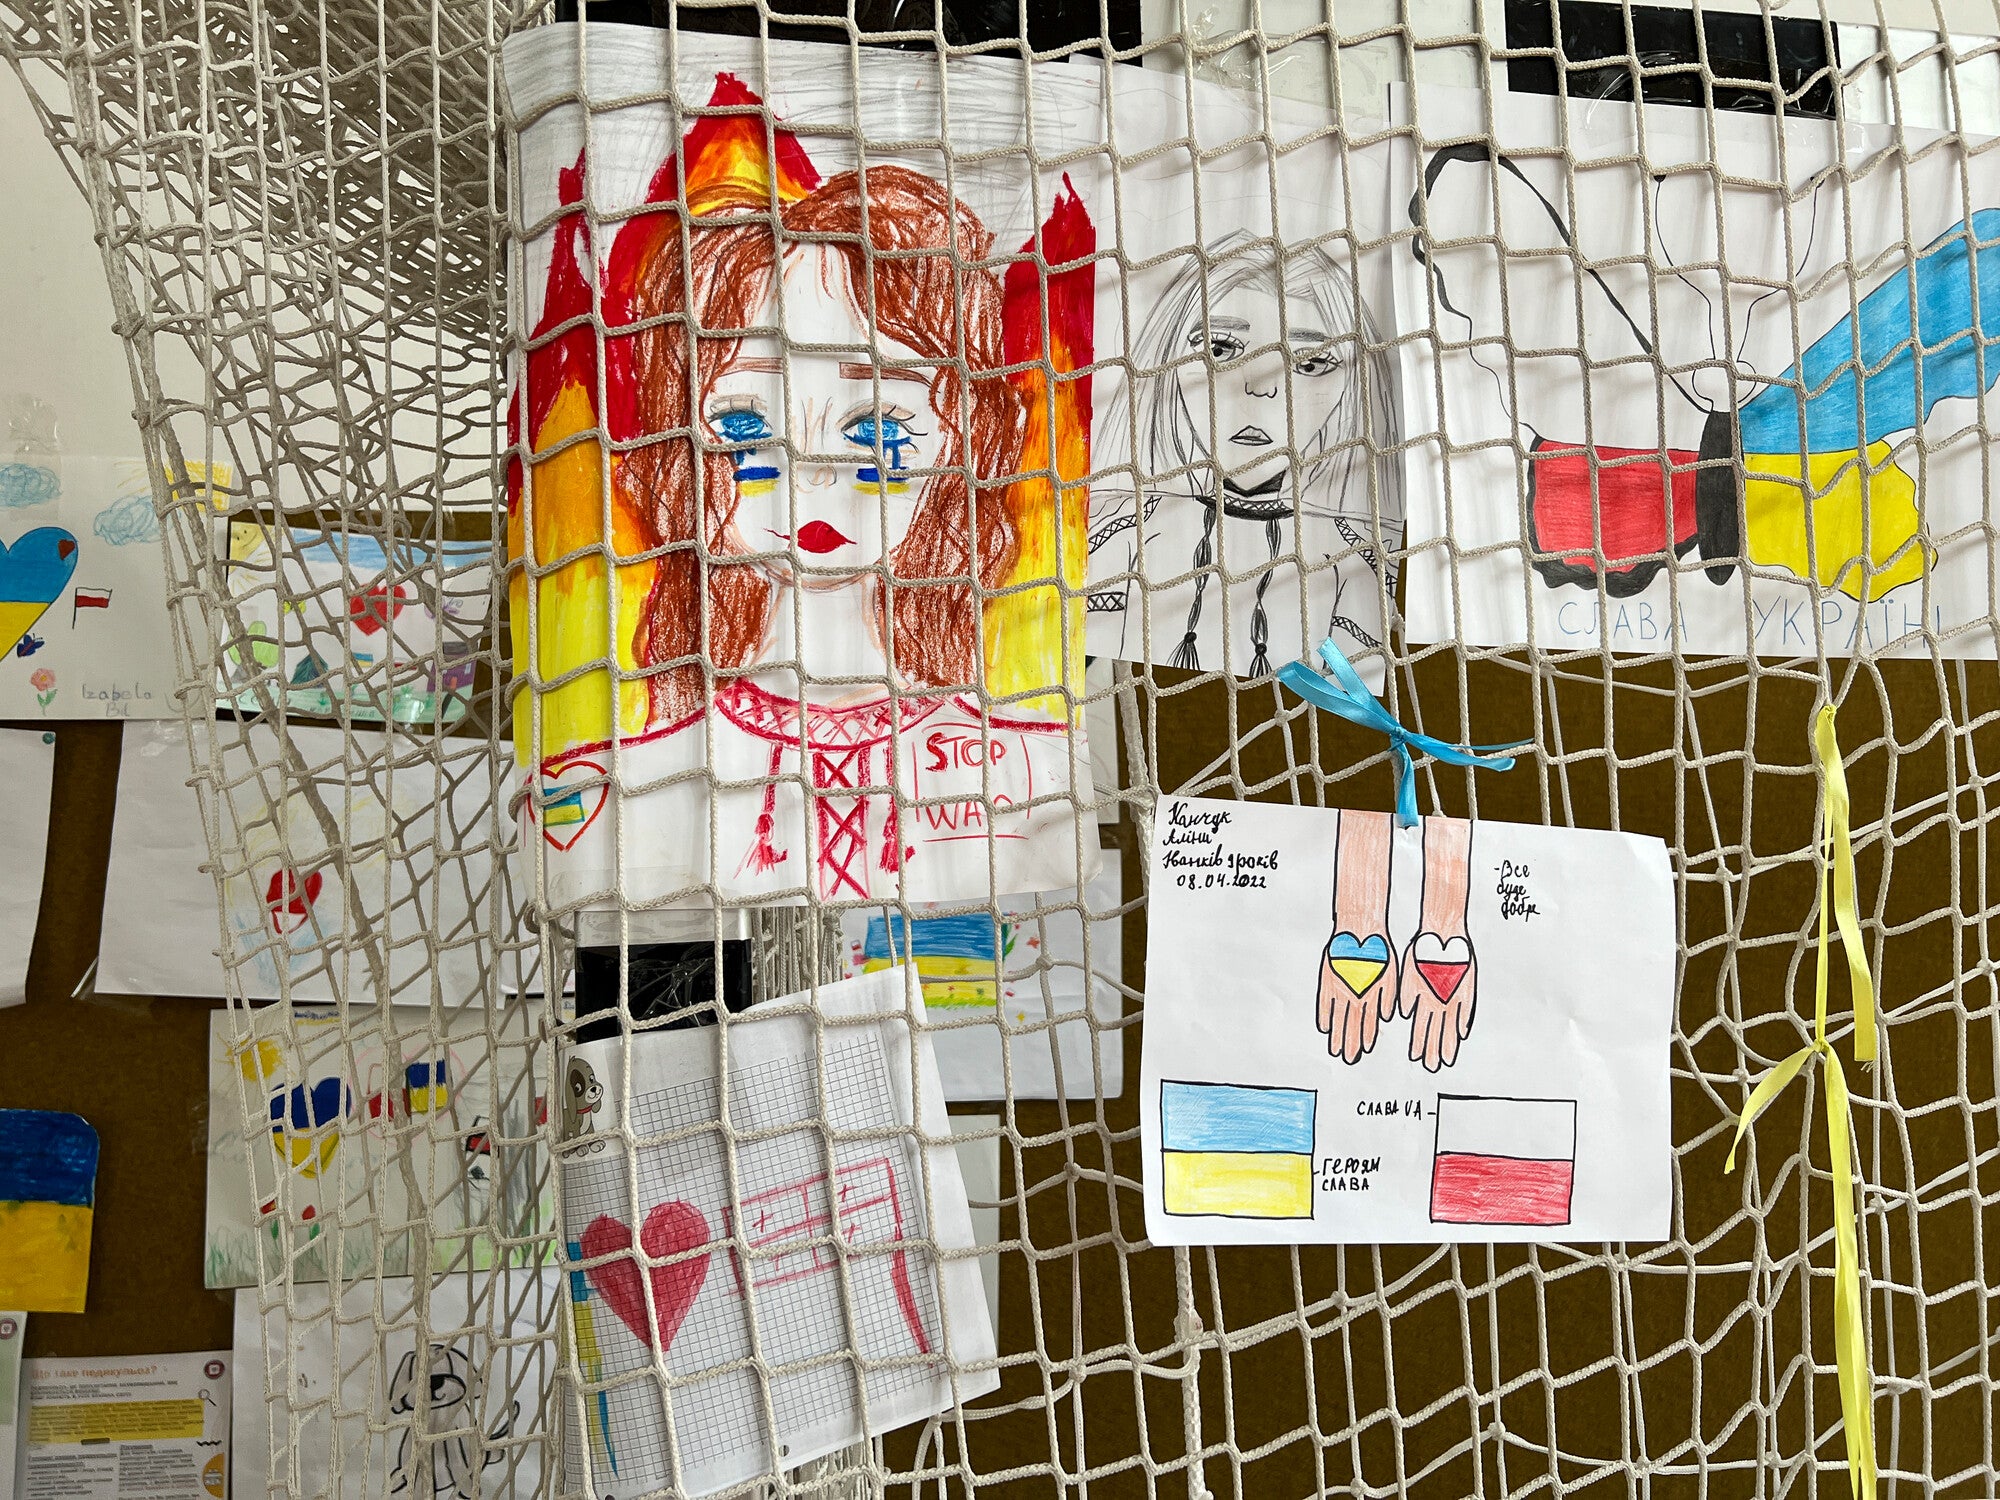 desenhos de crianças refugiadas ucranianas que foram exibidos informalmente em uma estação de artes e artesanato em um ginásio escolar convertido